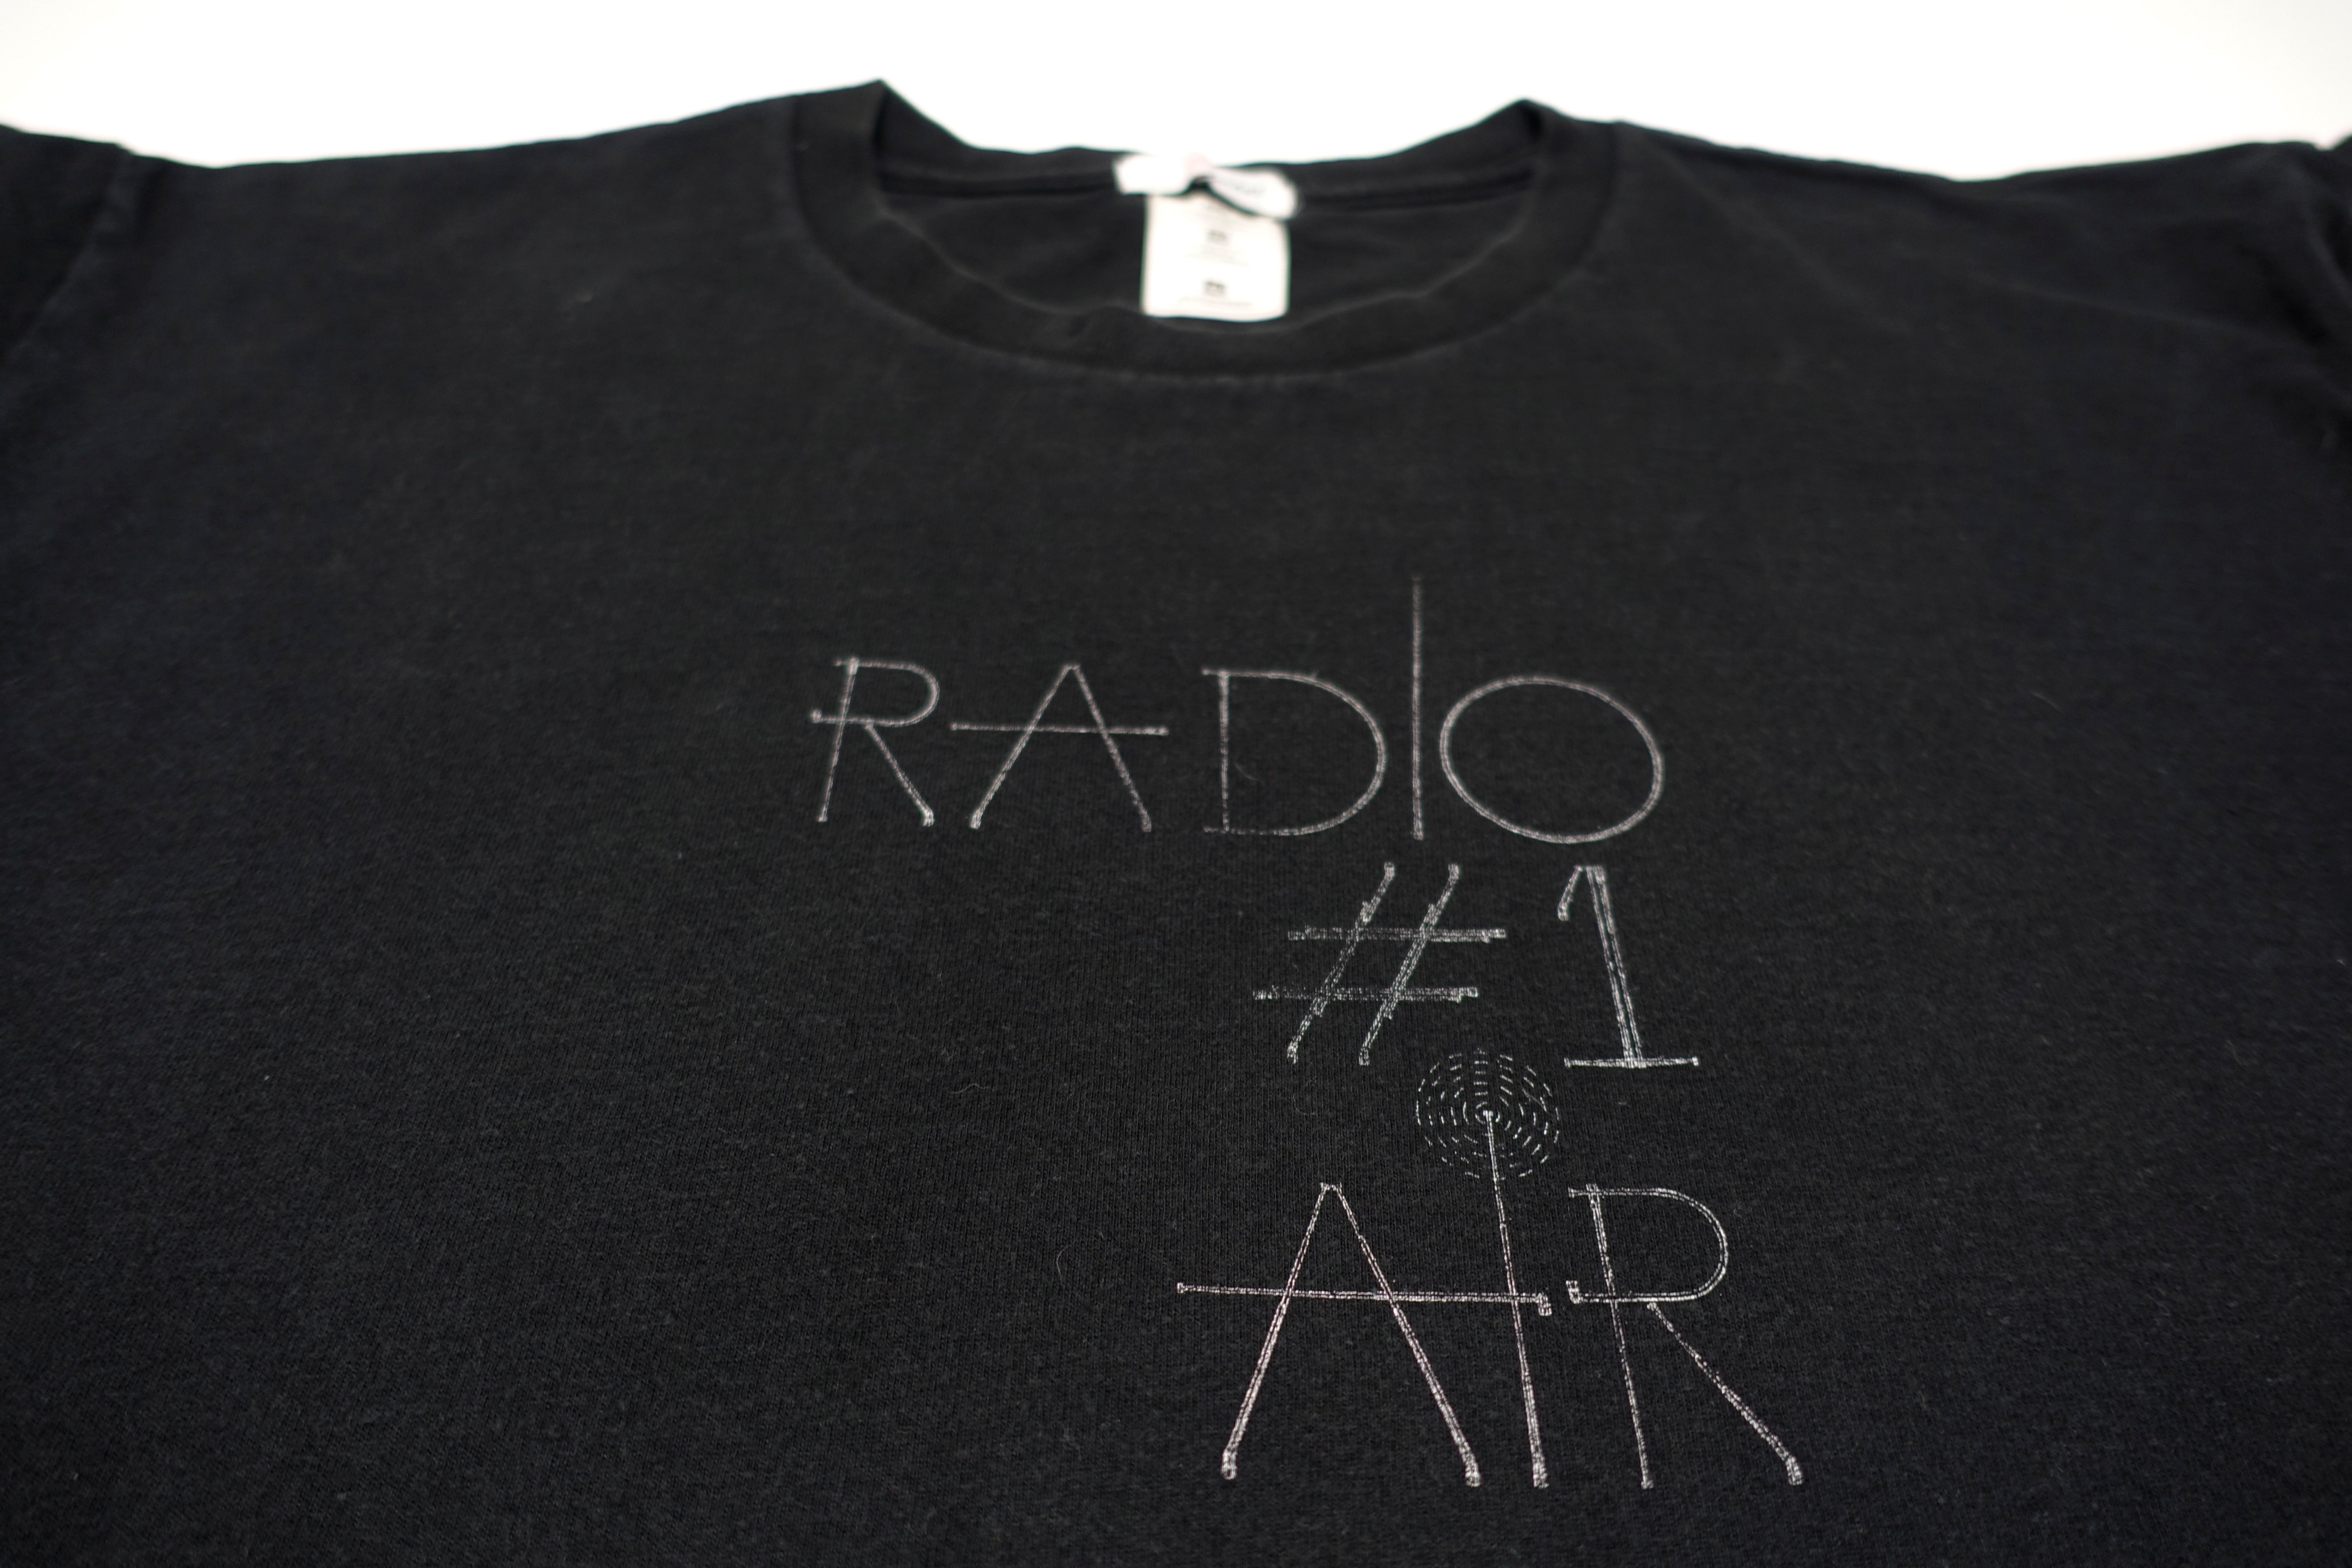 Air - Radio #1 2001 Tour Shirt Size XL